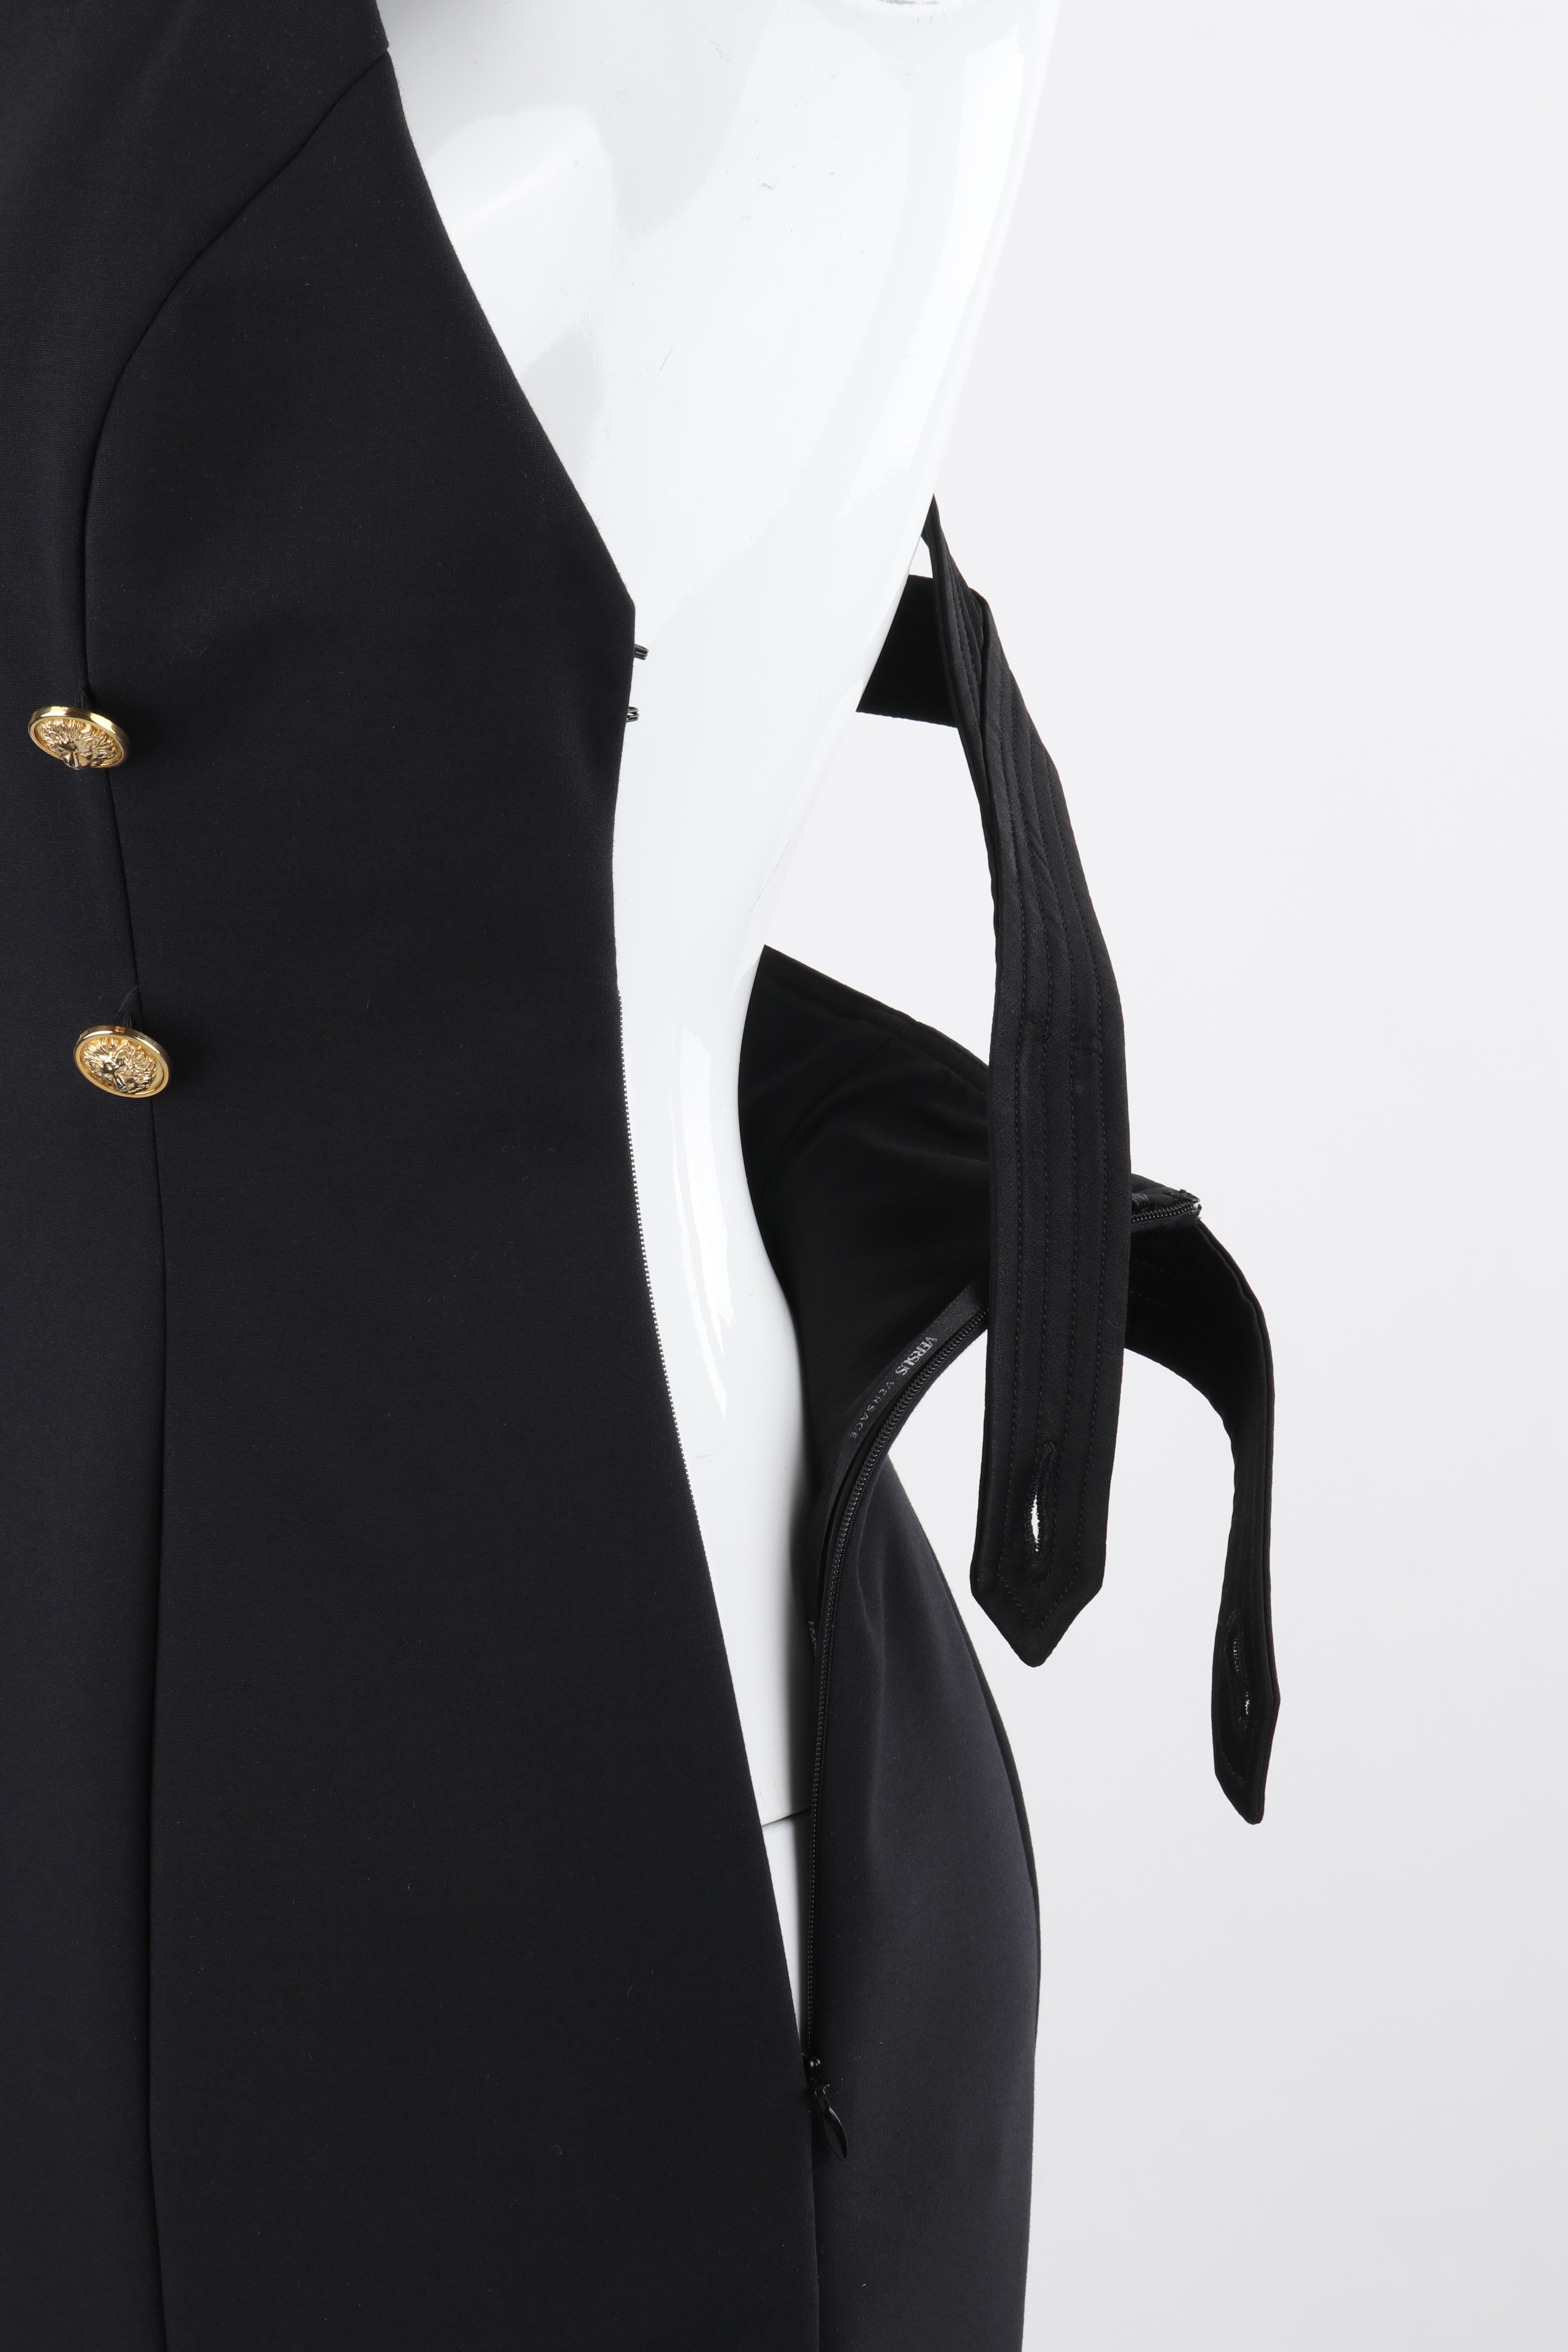 VERSACE S/S 2015 Black Bondage Gold Lion Button Overall Princess Line Dress  For Sale 2